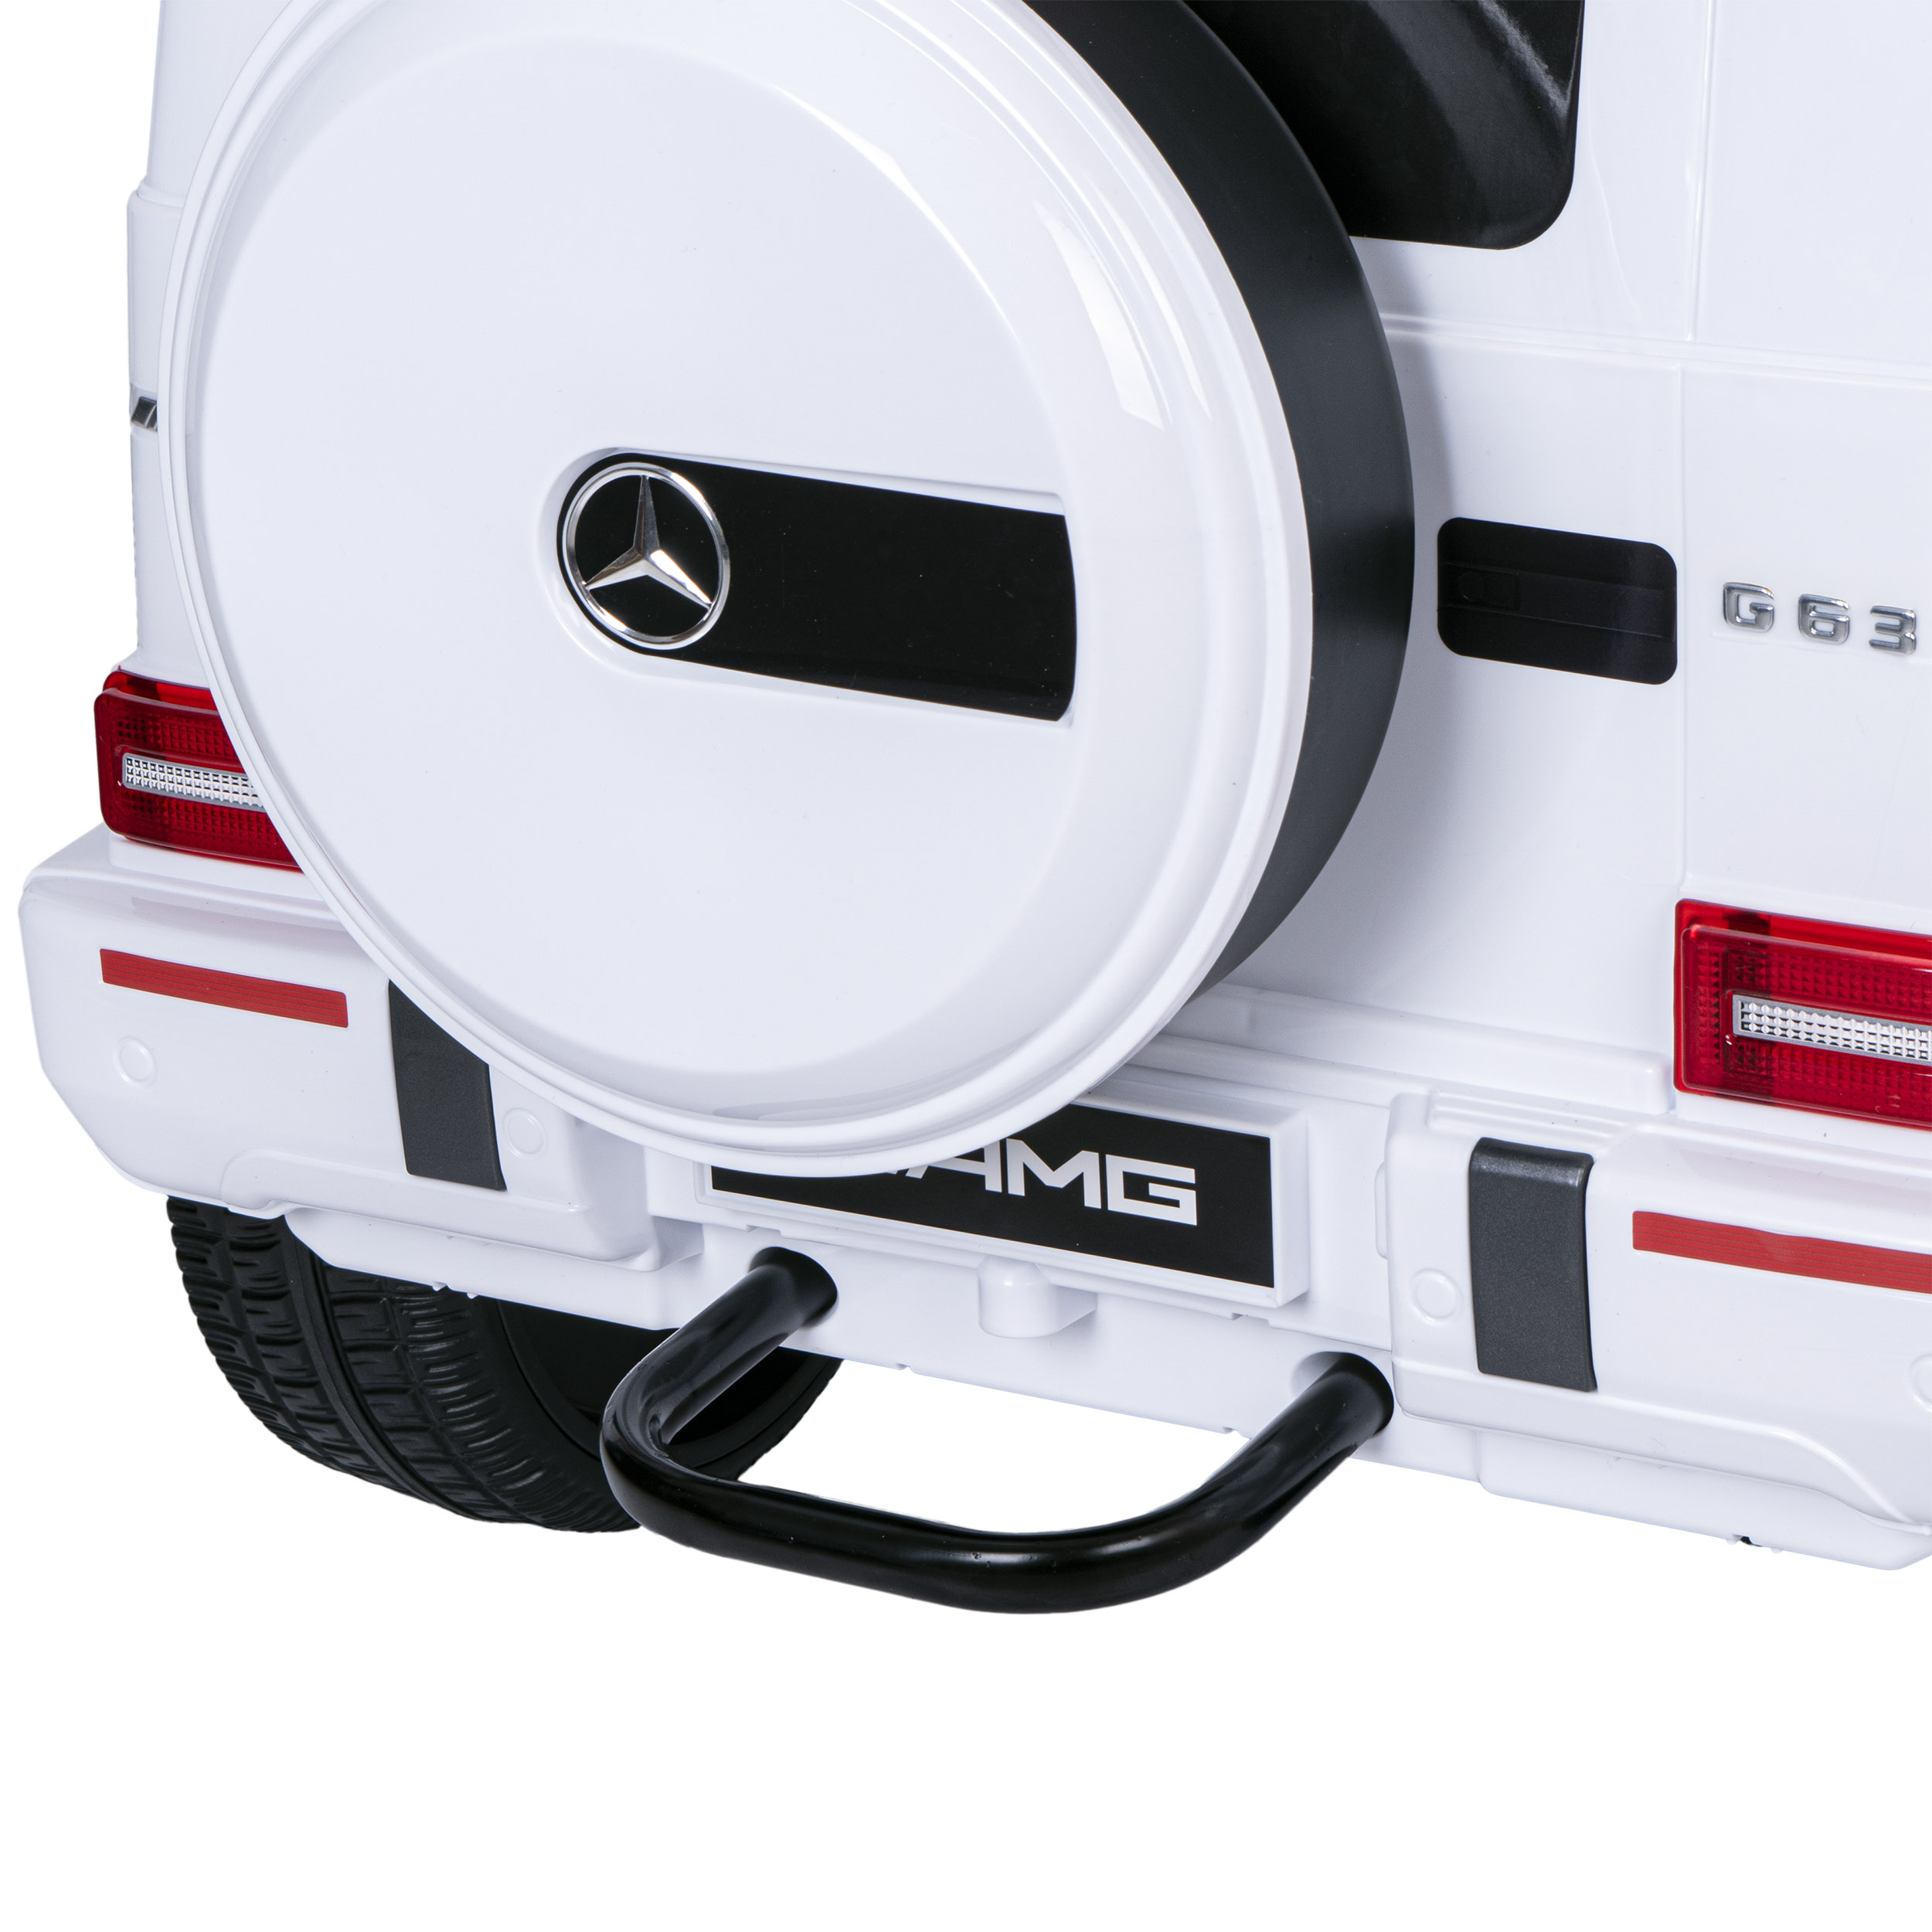 SamocSamochód elektryczny dla dzieci MERCEDES AMG G63 biały